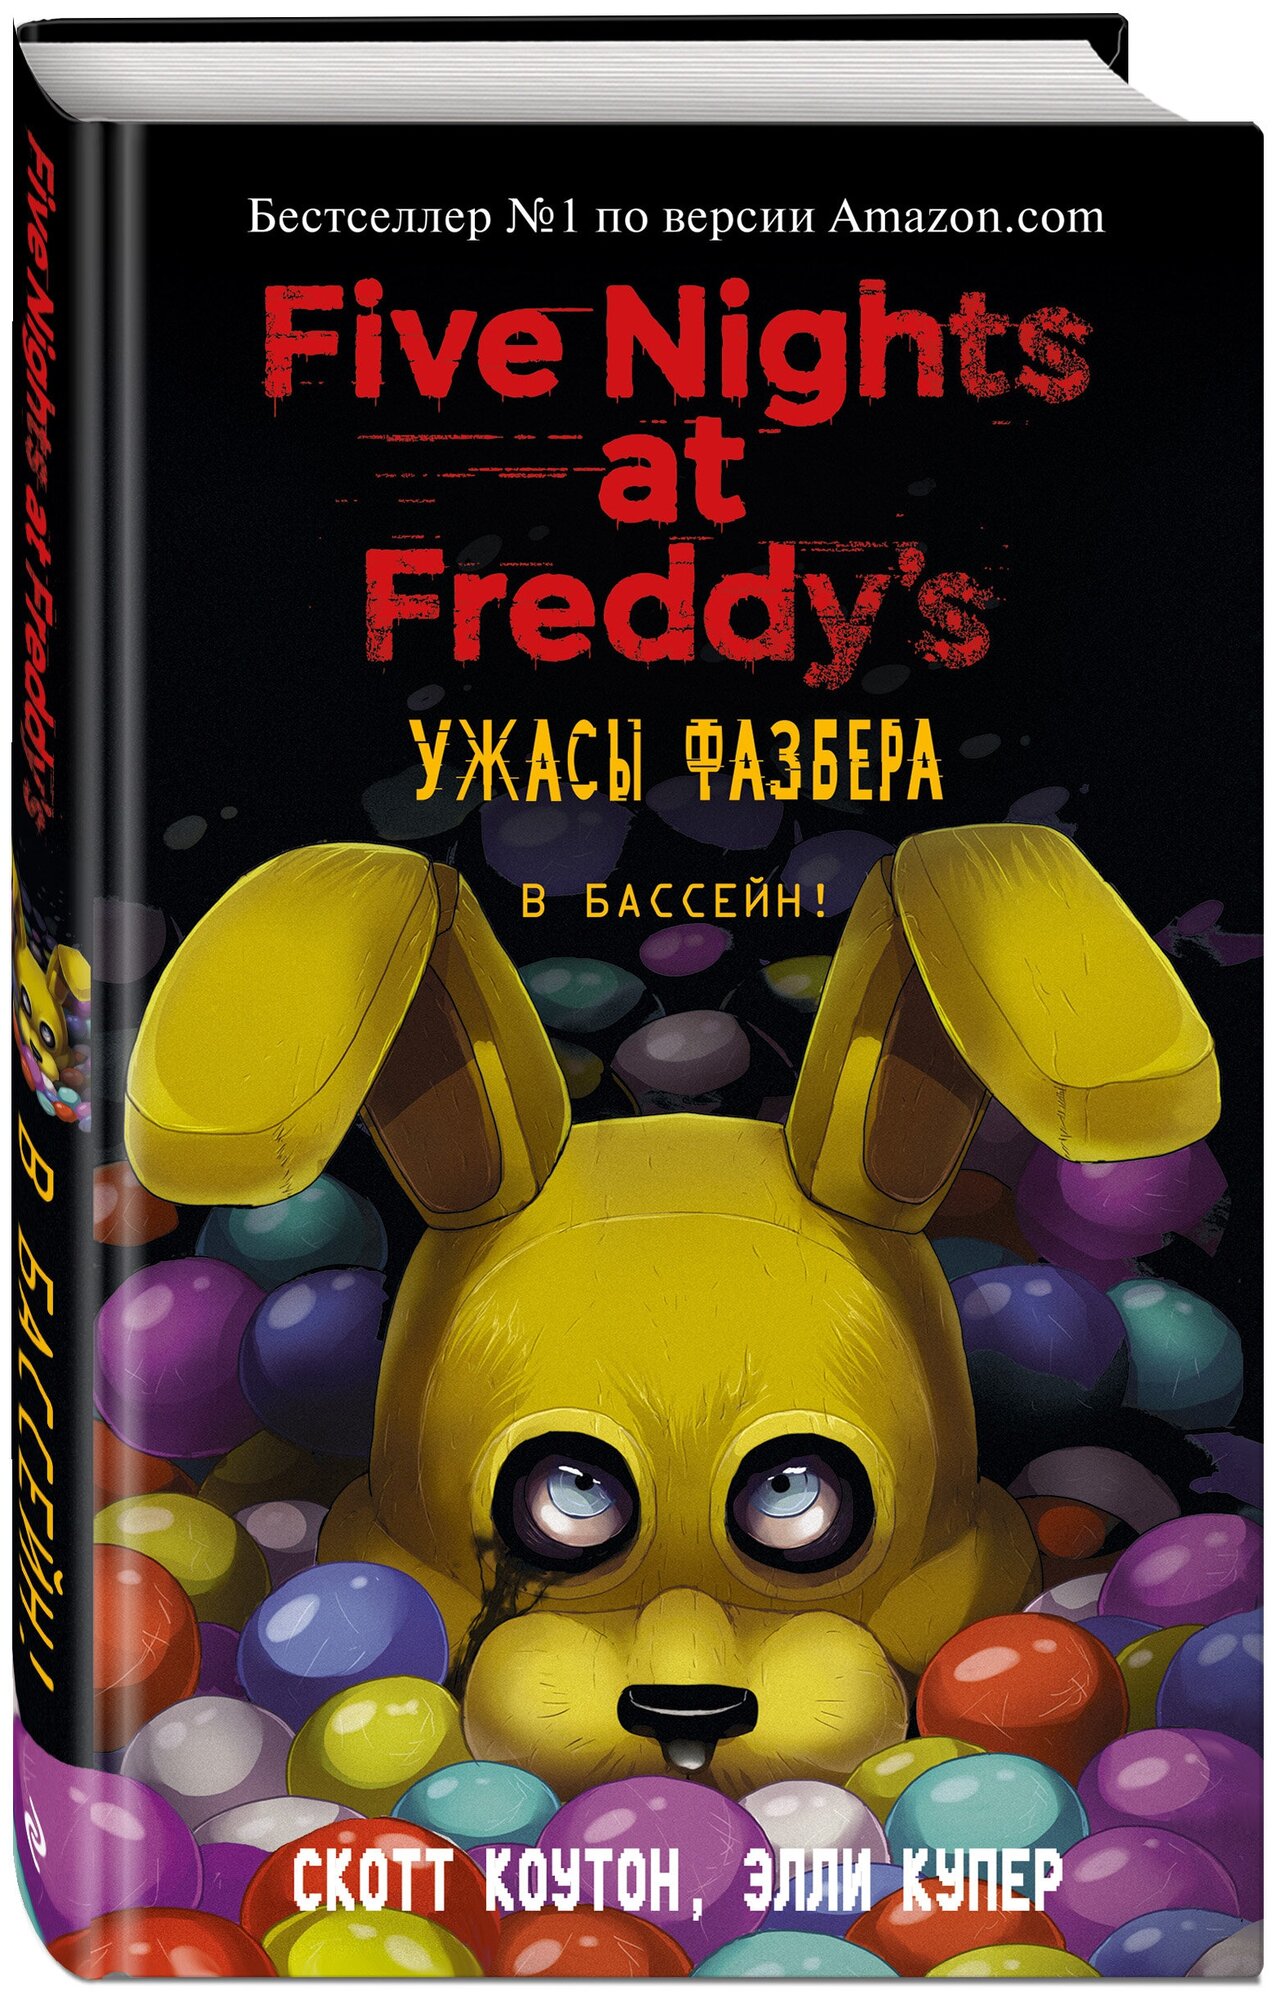 Коутон С. Купер Э. "Five Nights at Freddy's. Ужасы Фазбера. В бассейн!"